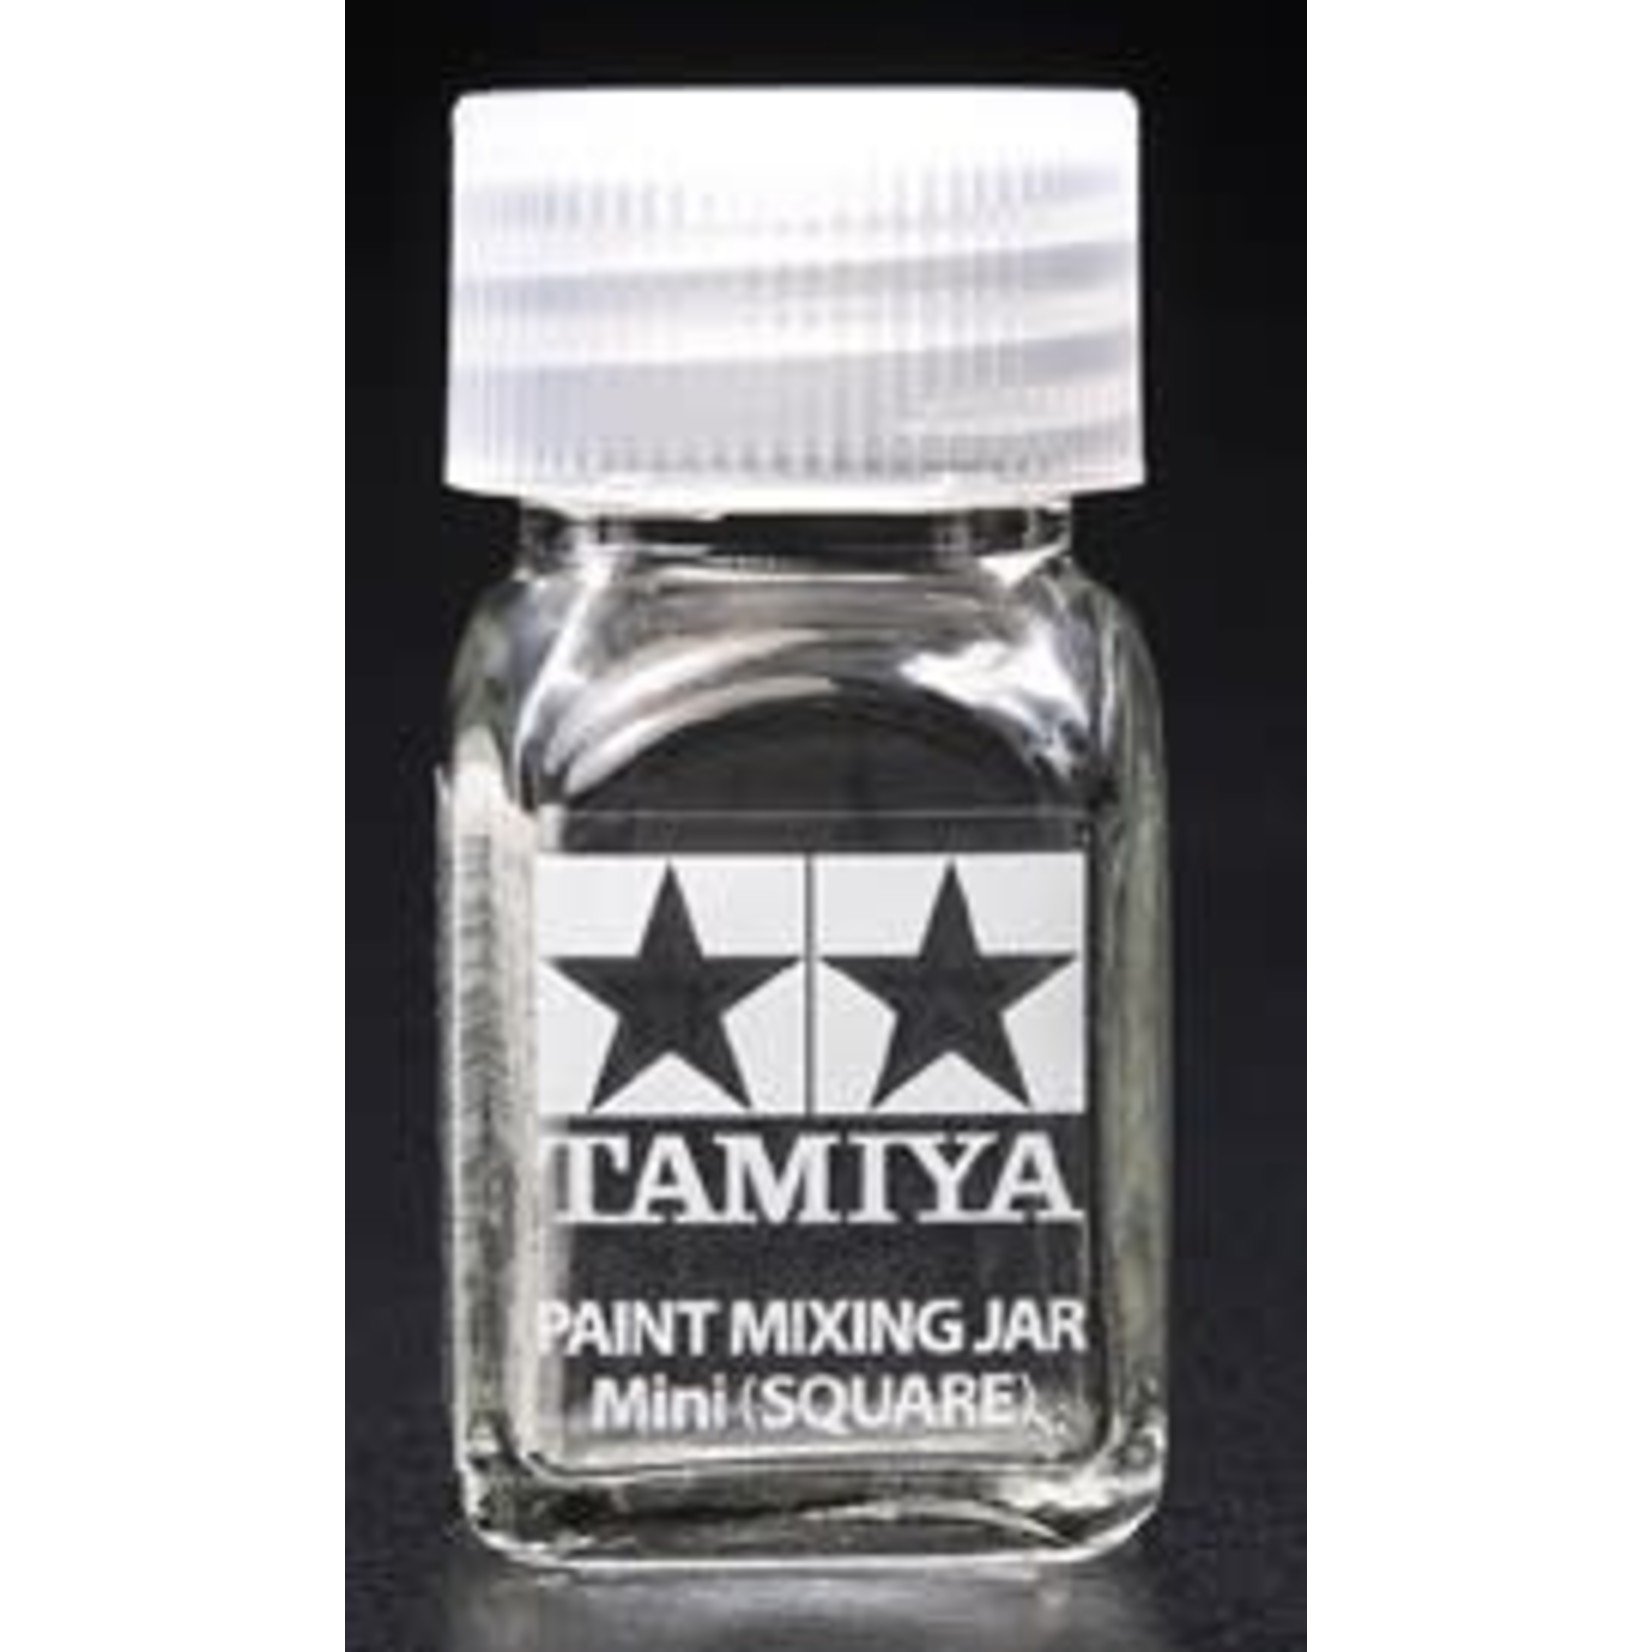 Tamiya Tamiya Panel Paint Mixing Jar mini (Square) 10ml empty